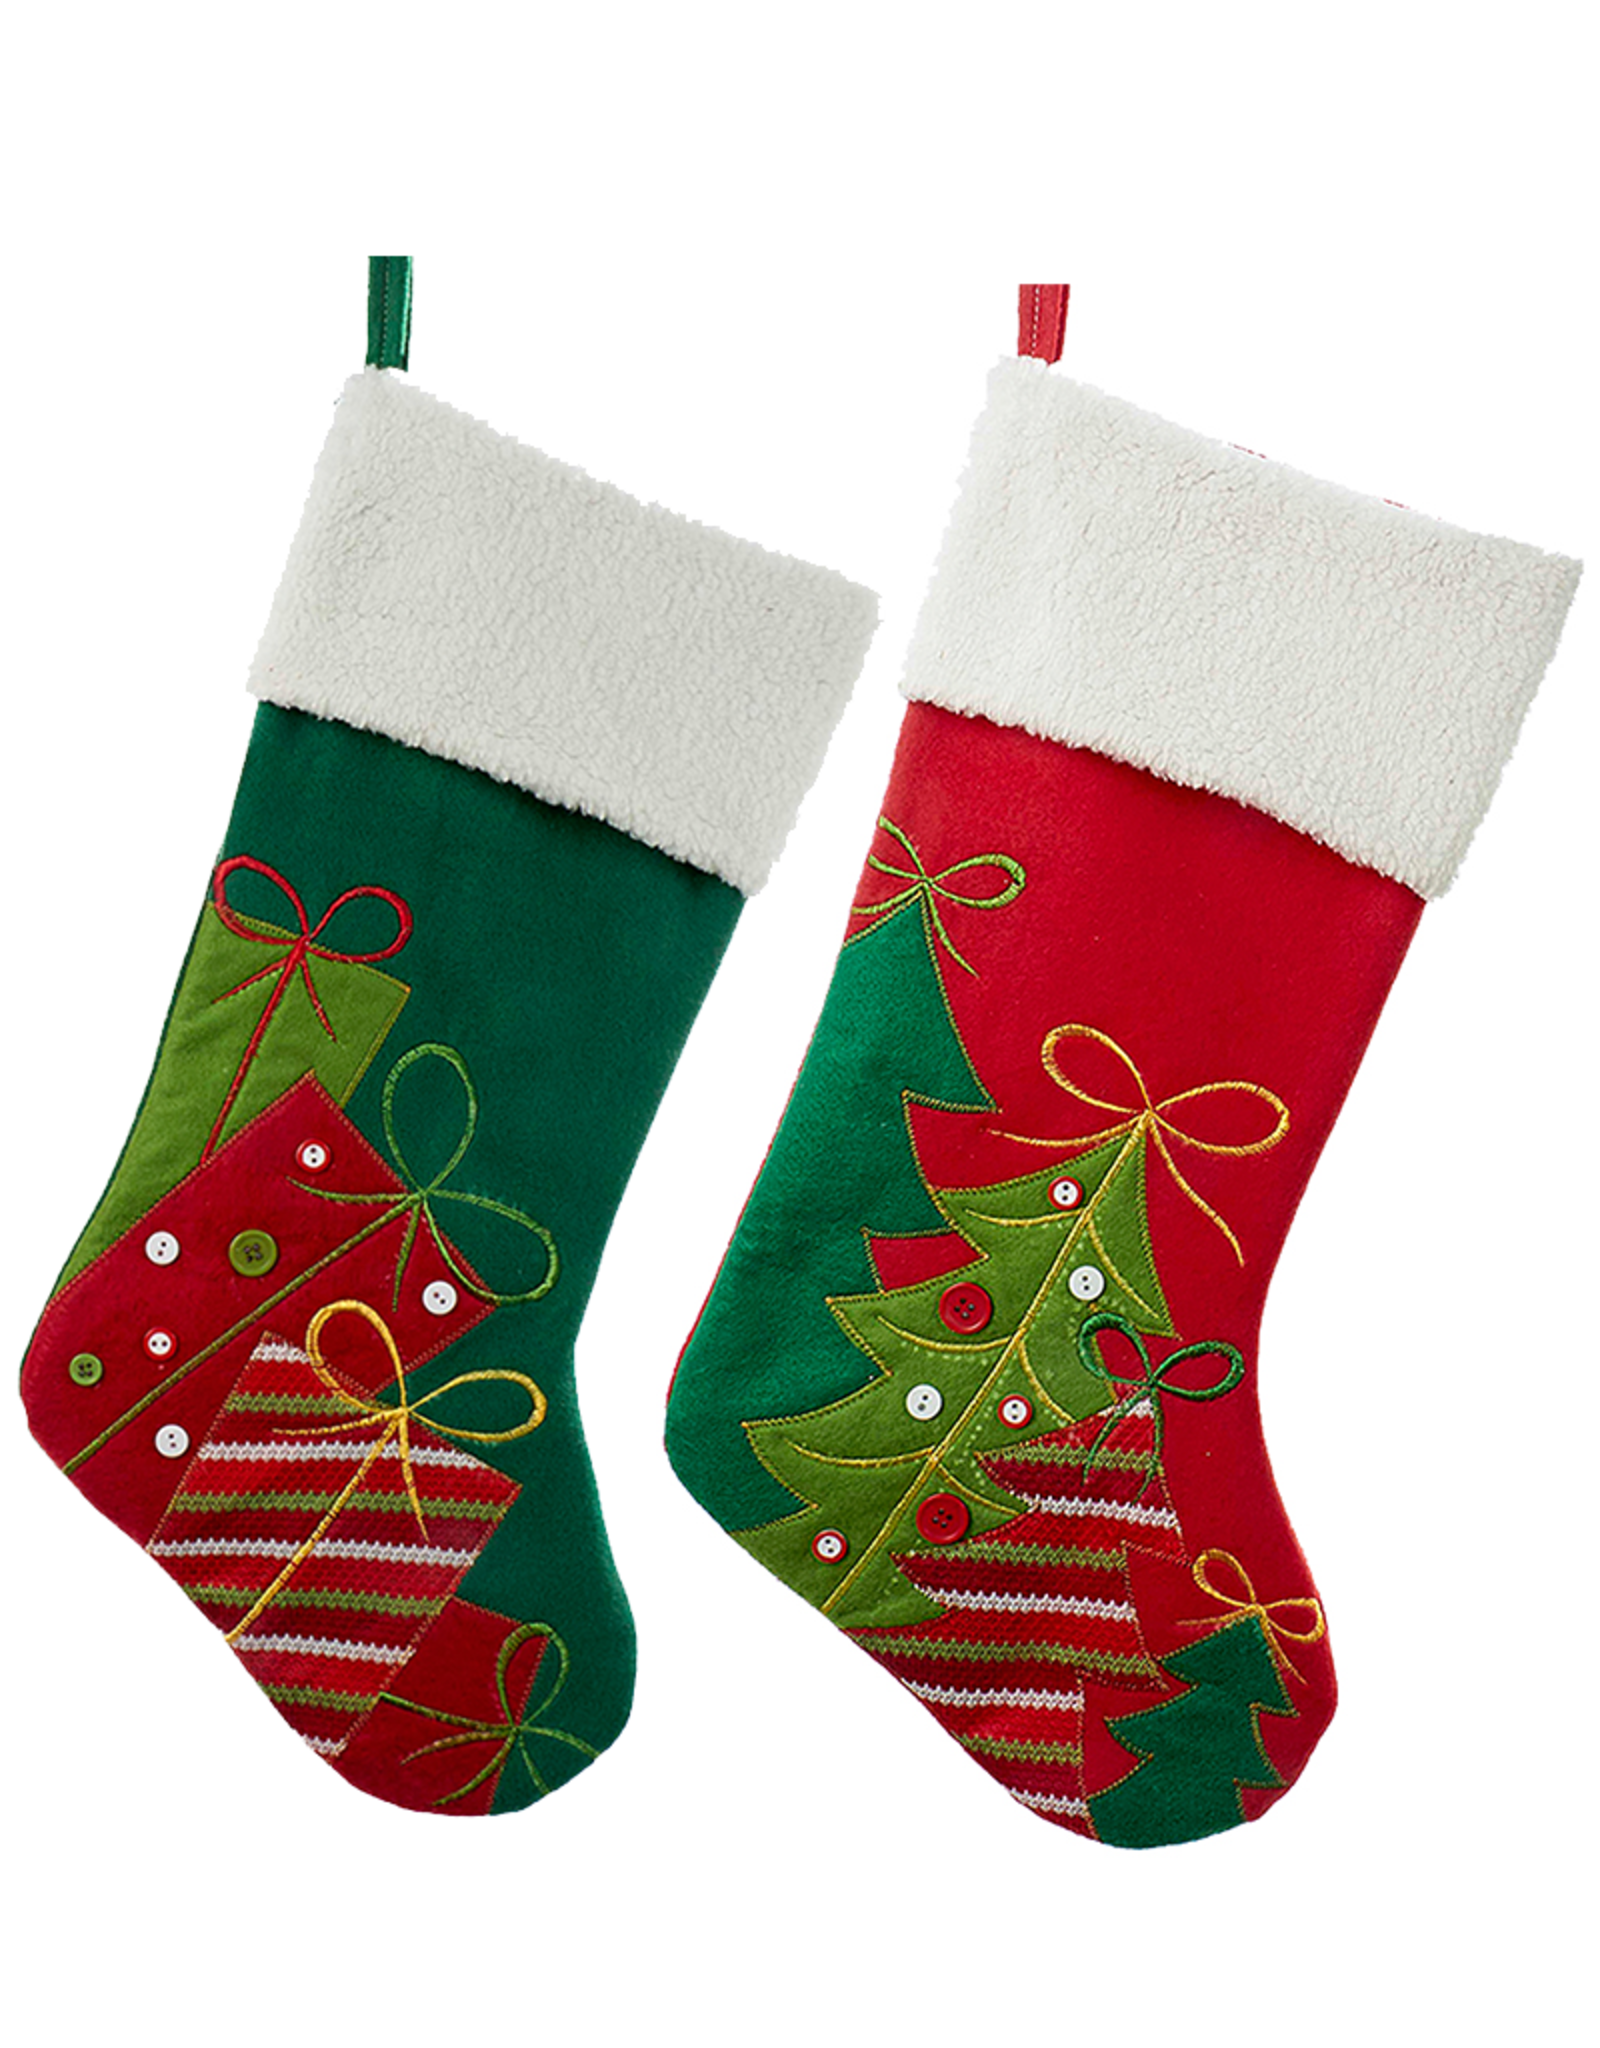 Kurt Adler Christmas Stockings Set of 2 Presents And Christmas Trees